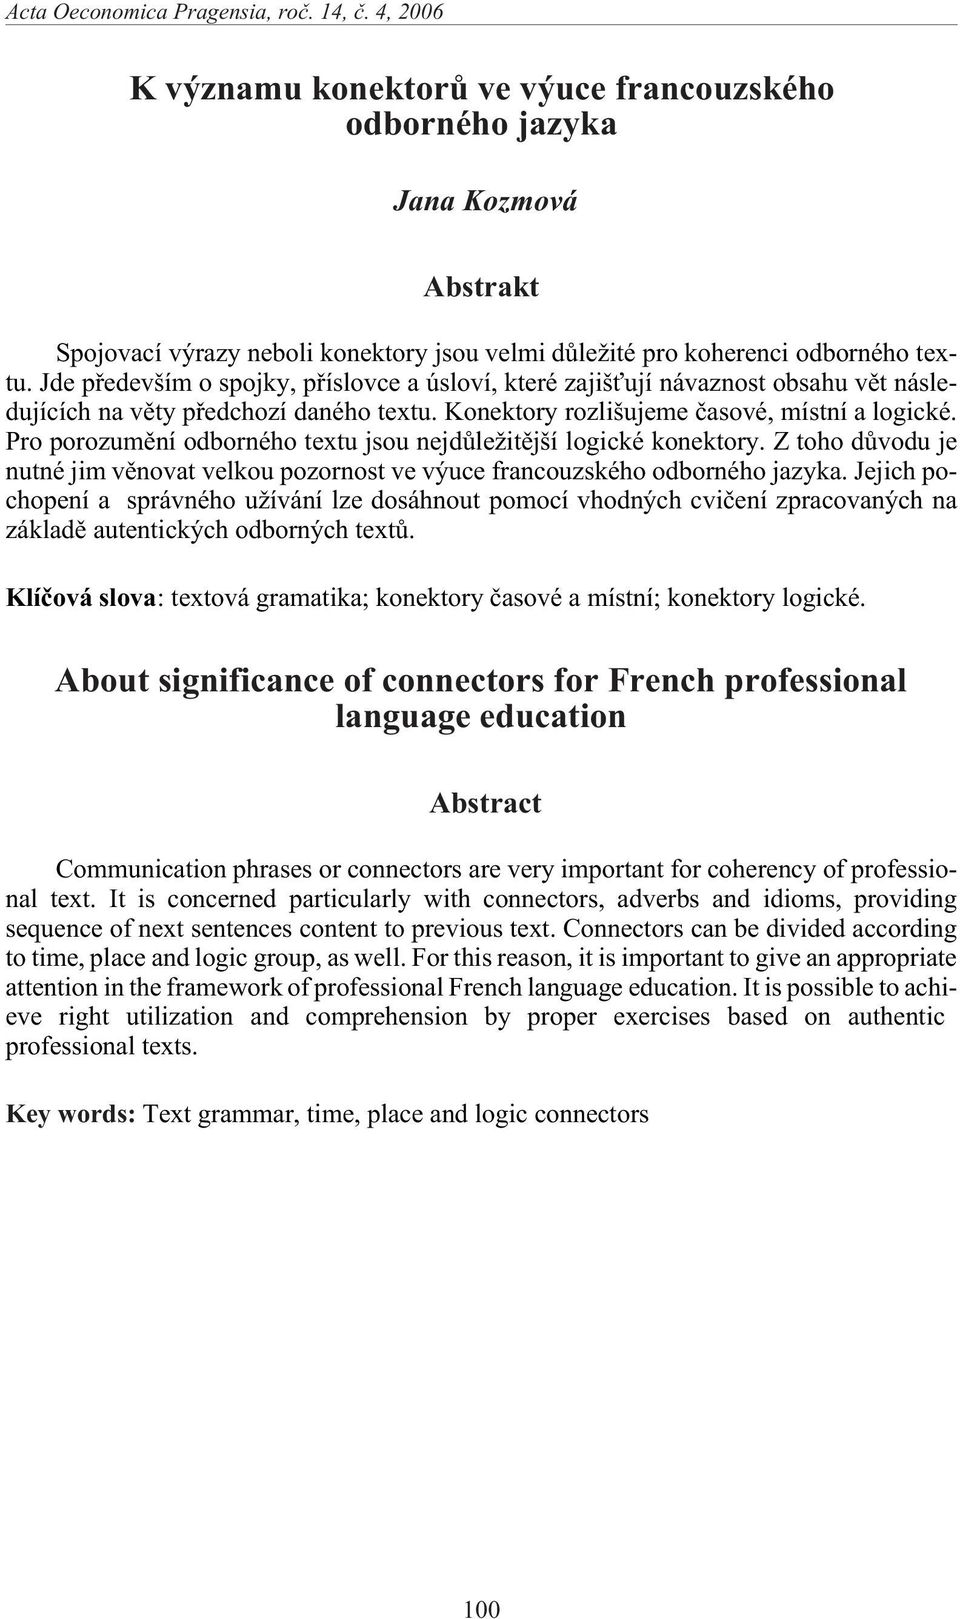 Pro porozumìní odborného textu jsou nejdùle itìjší logické konektory. Z toho dùvodu je nutné jim vìnovat velkou pozornost ve výuce francouzského odborného jazyka.